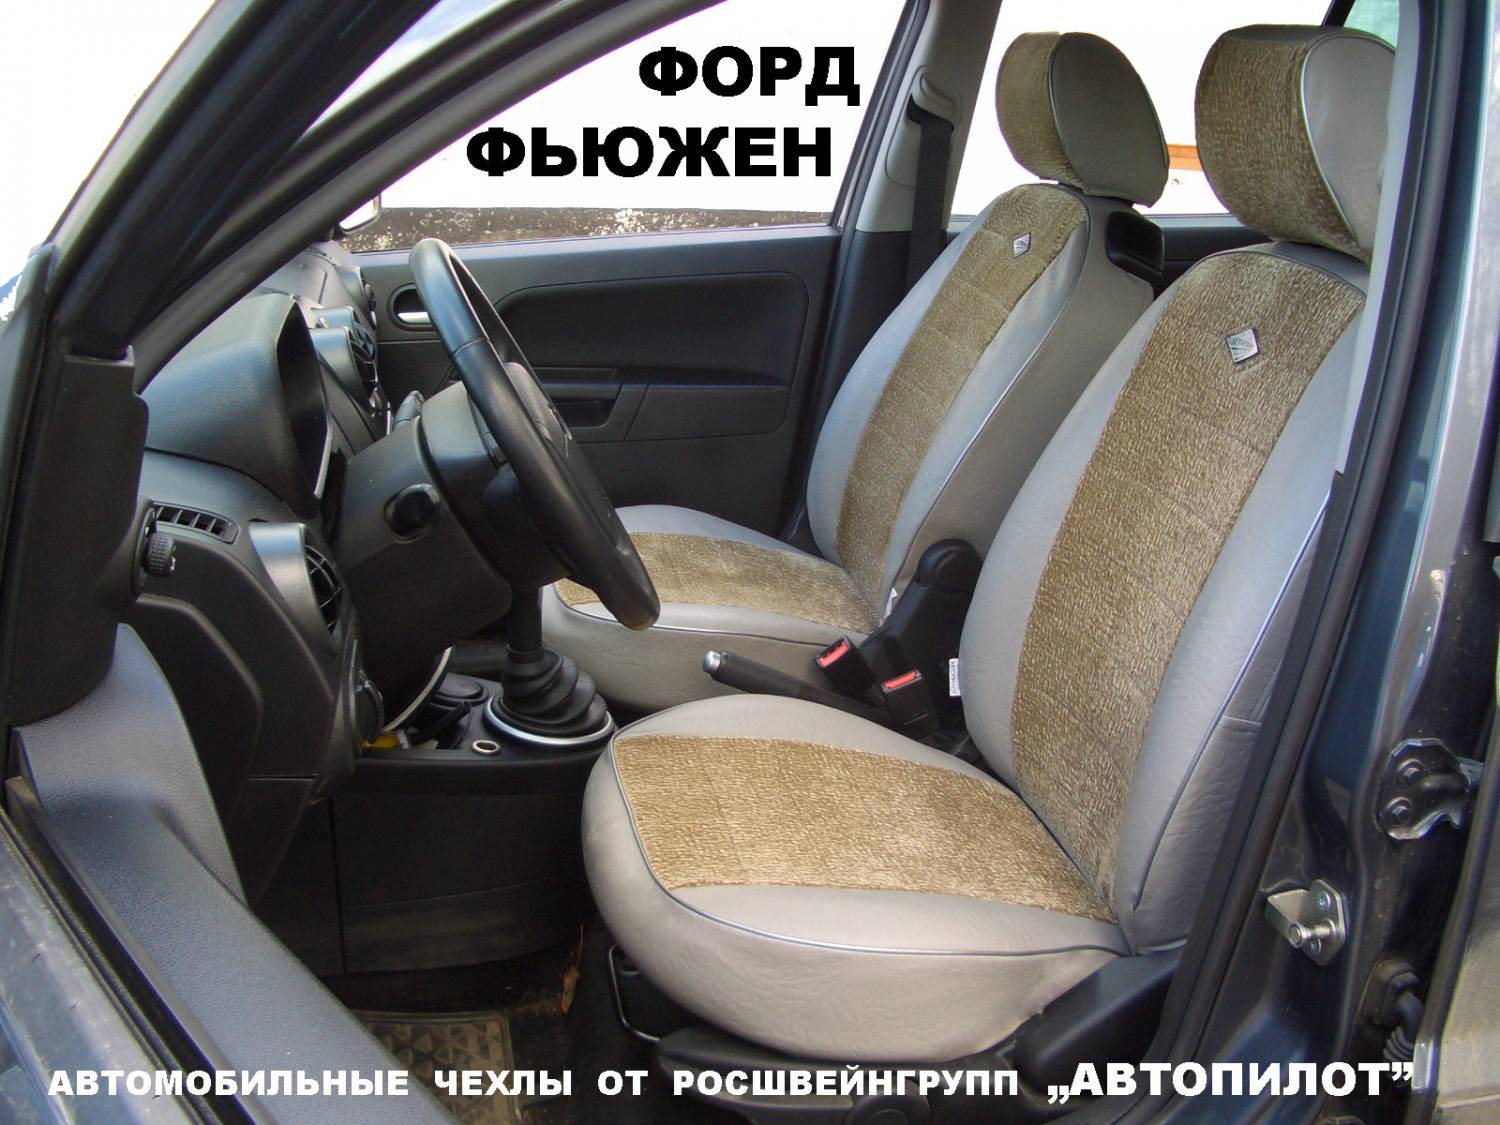 Форд Фьюжн 2005 — отзыв ... - Drom.ru